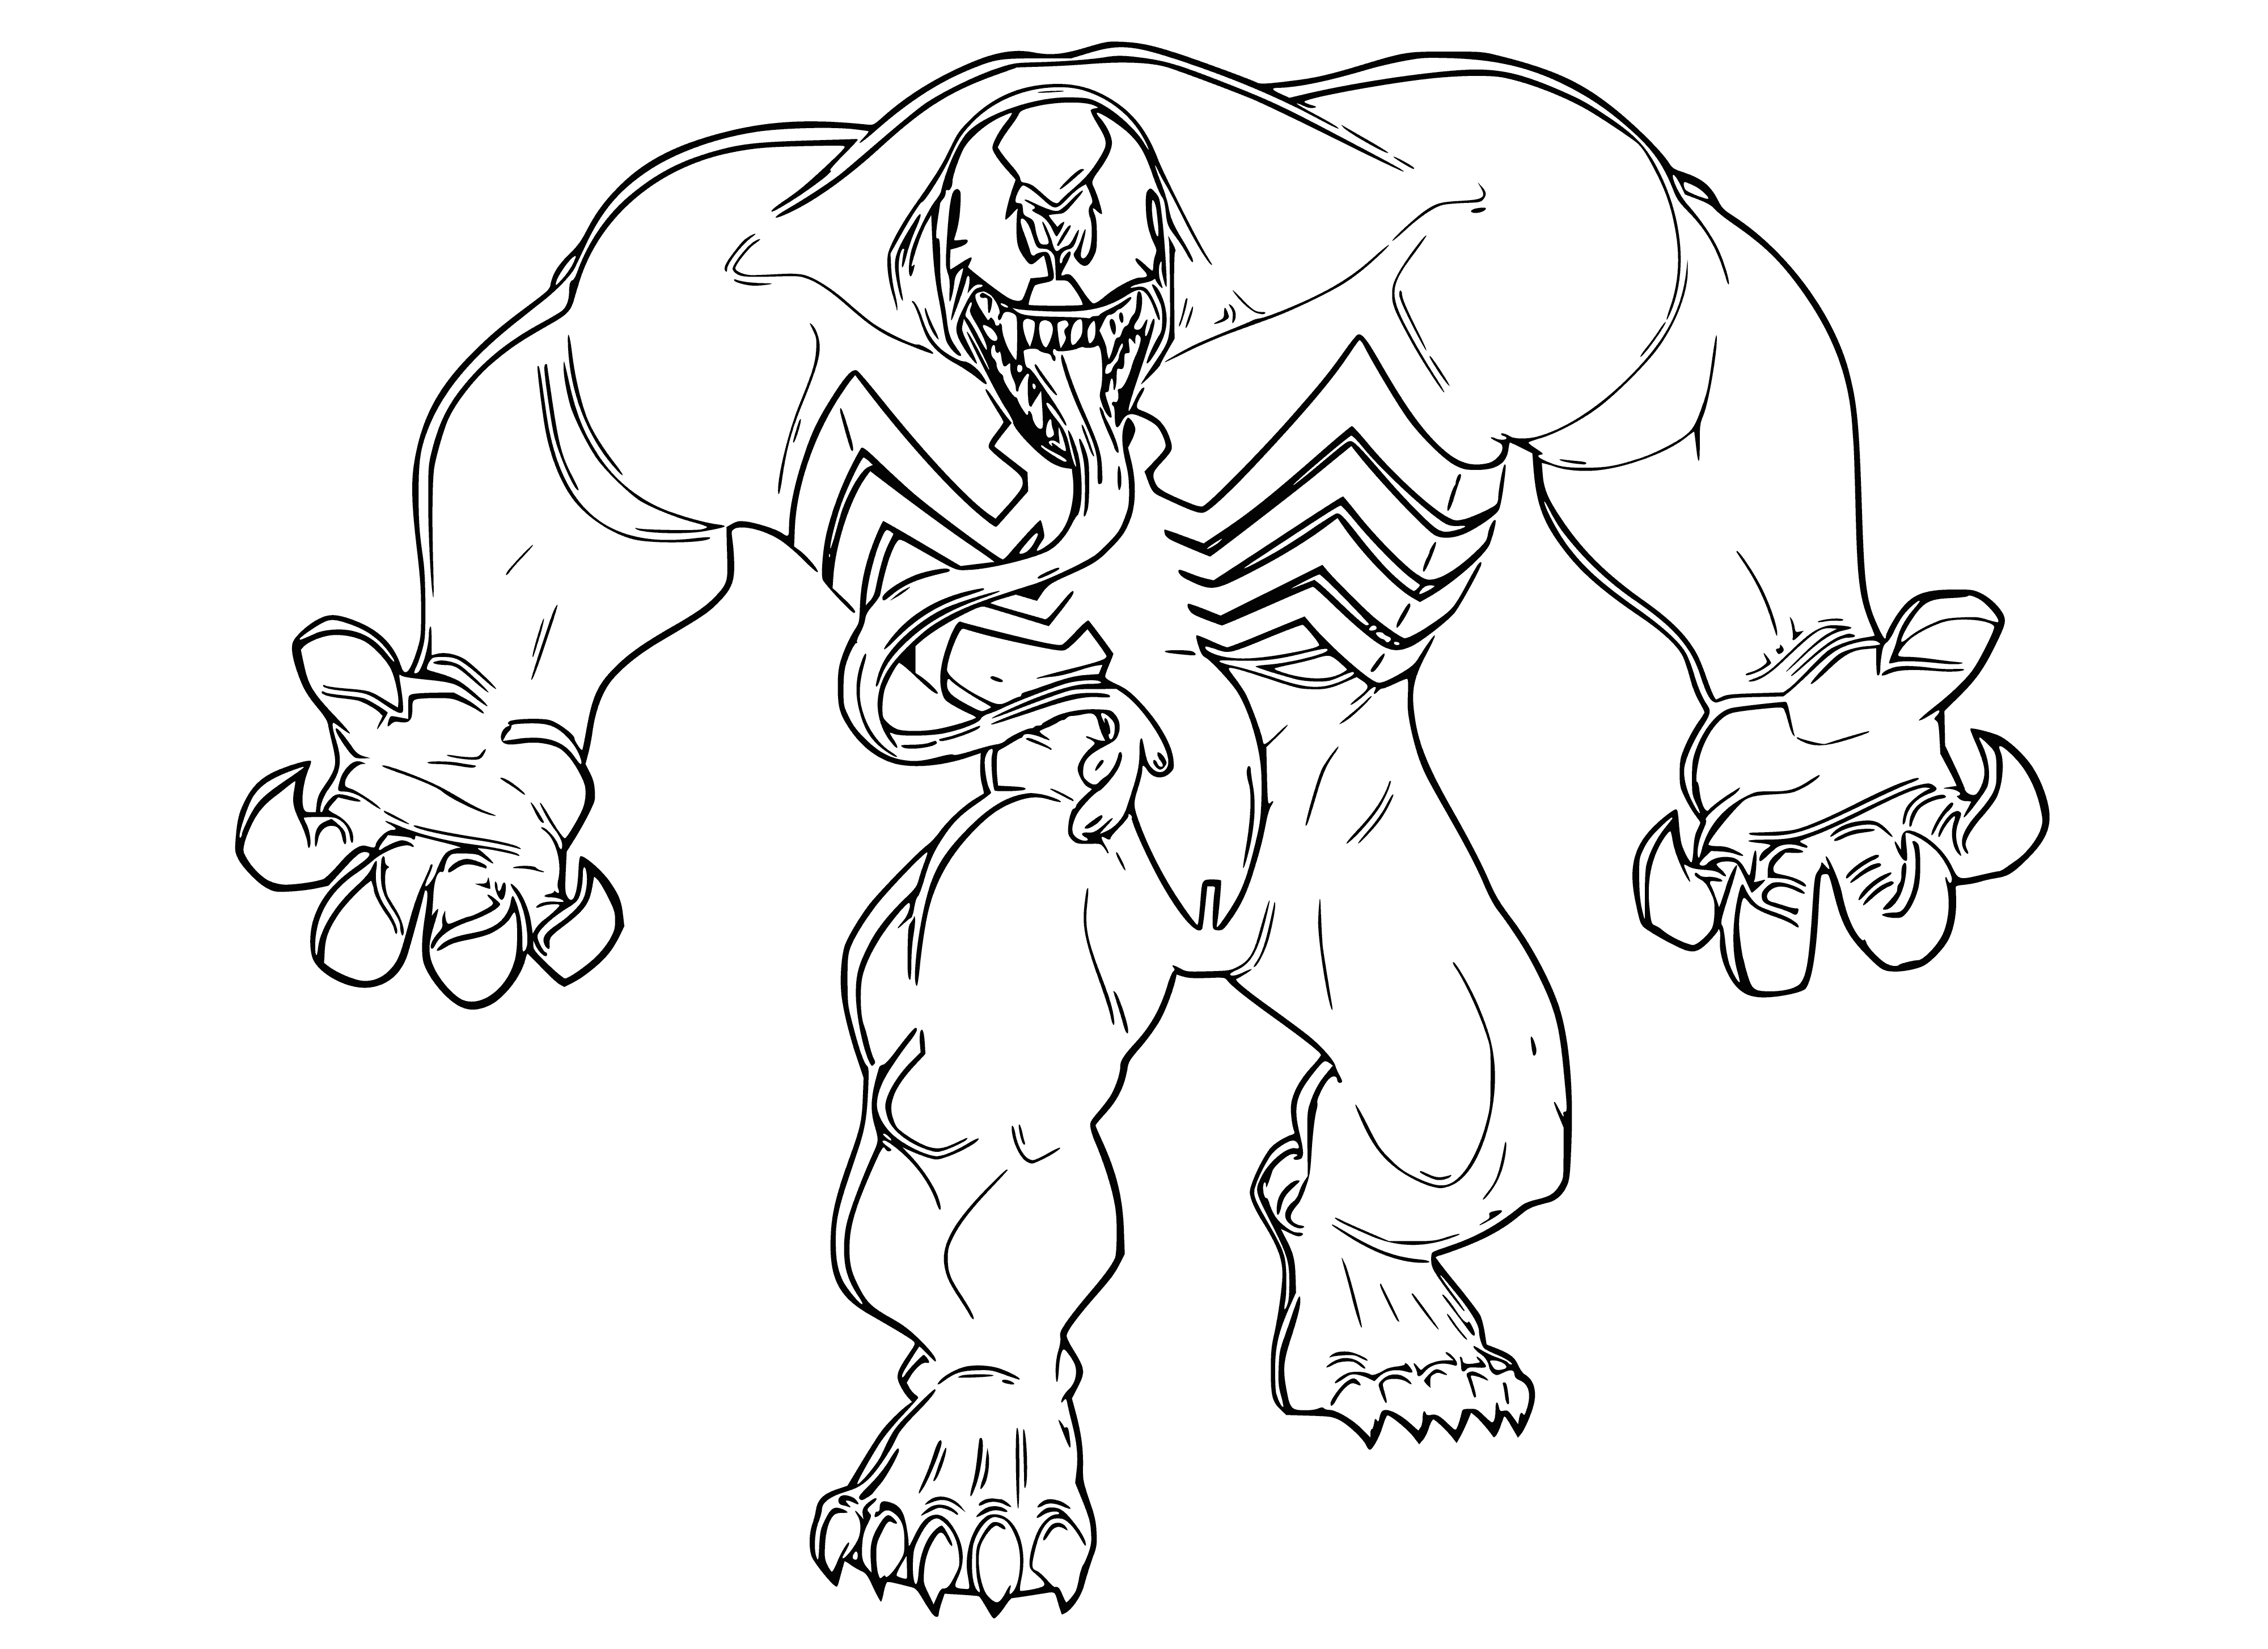 Venom coloring page